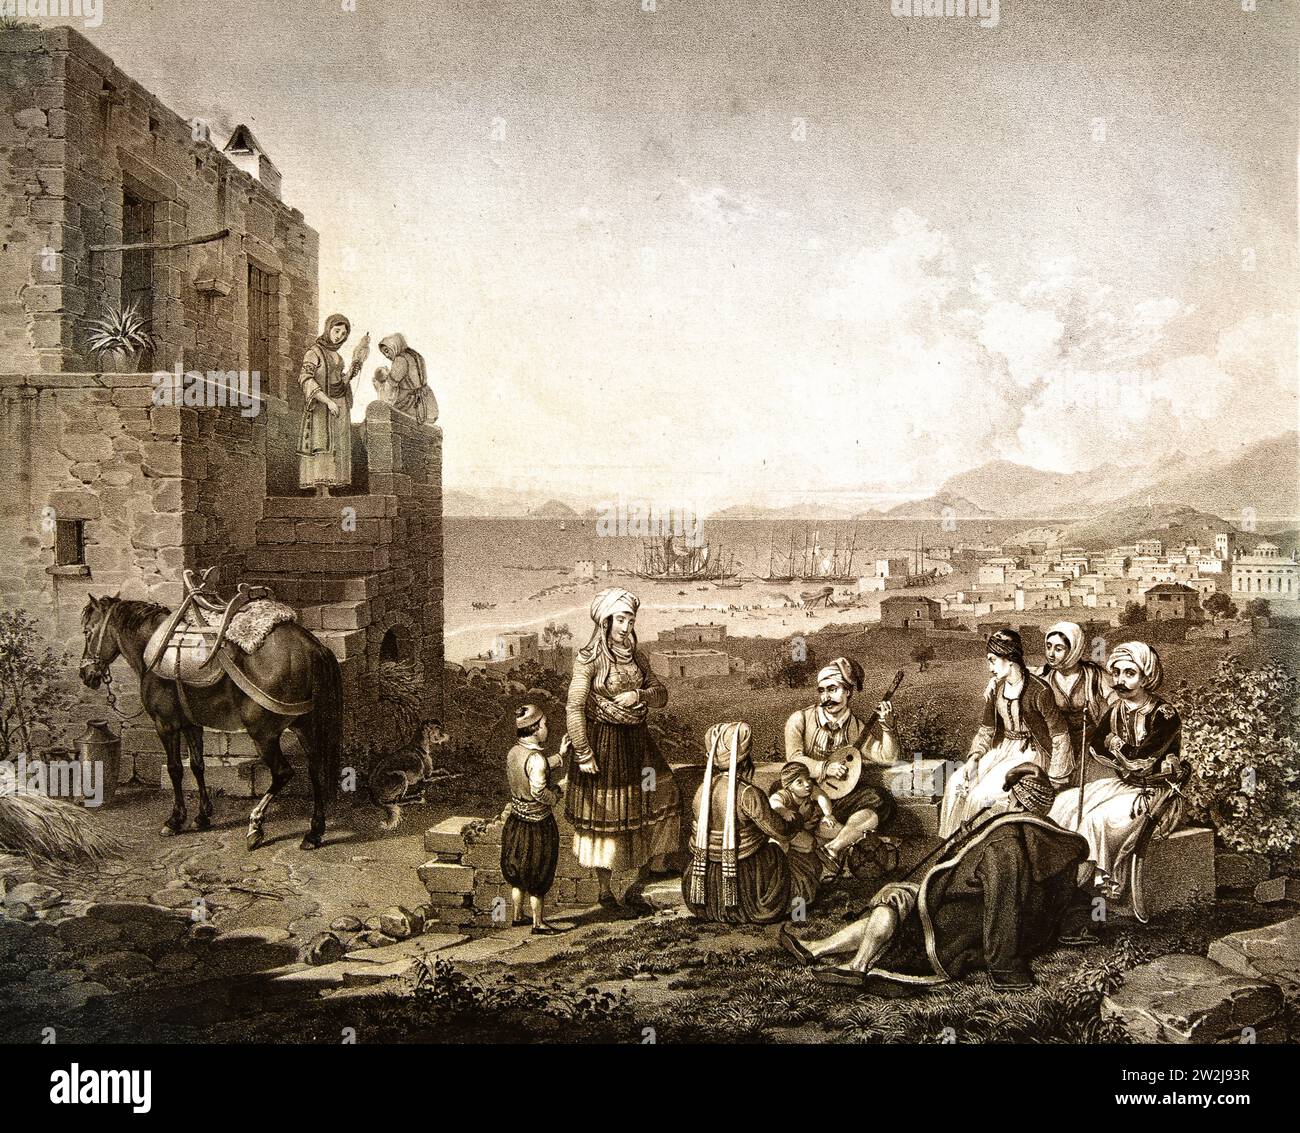 Egine, Paysage avec des paysans jouant de la musique 1828 Litigraphe, peinture 19RBR-20e siècle, Galerie nationale, Athènes, Grèce. Banque D'Images